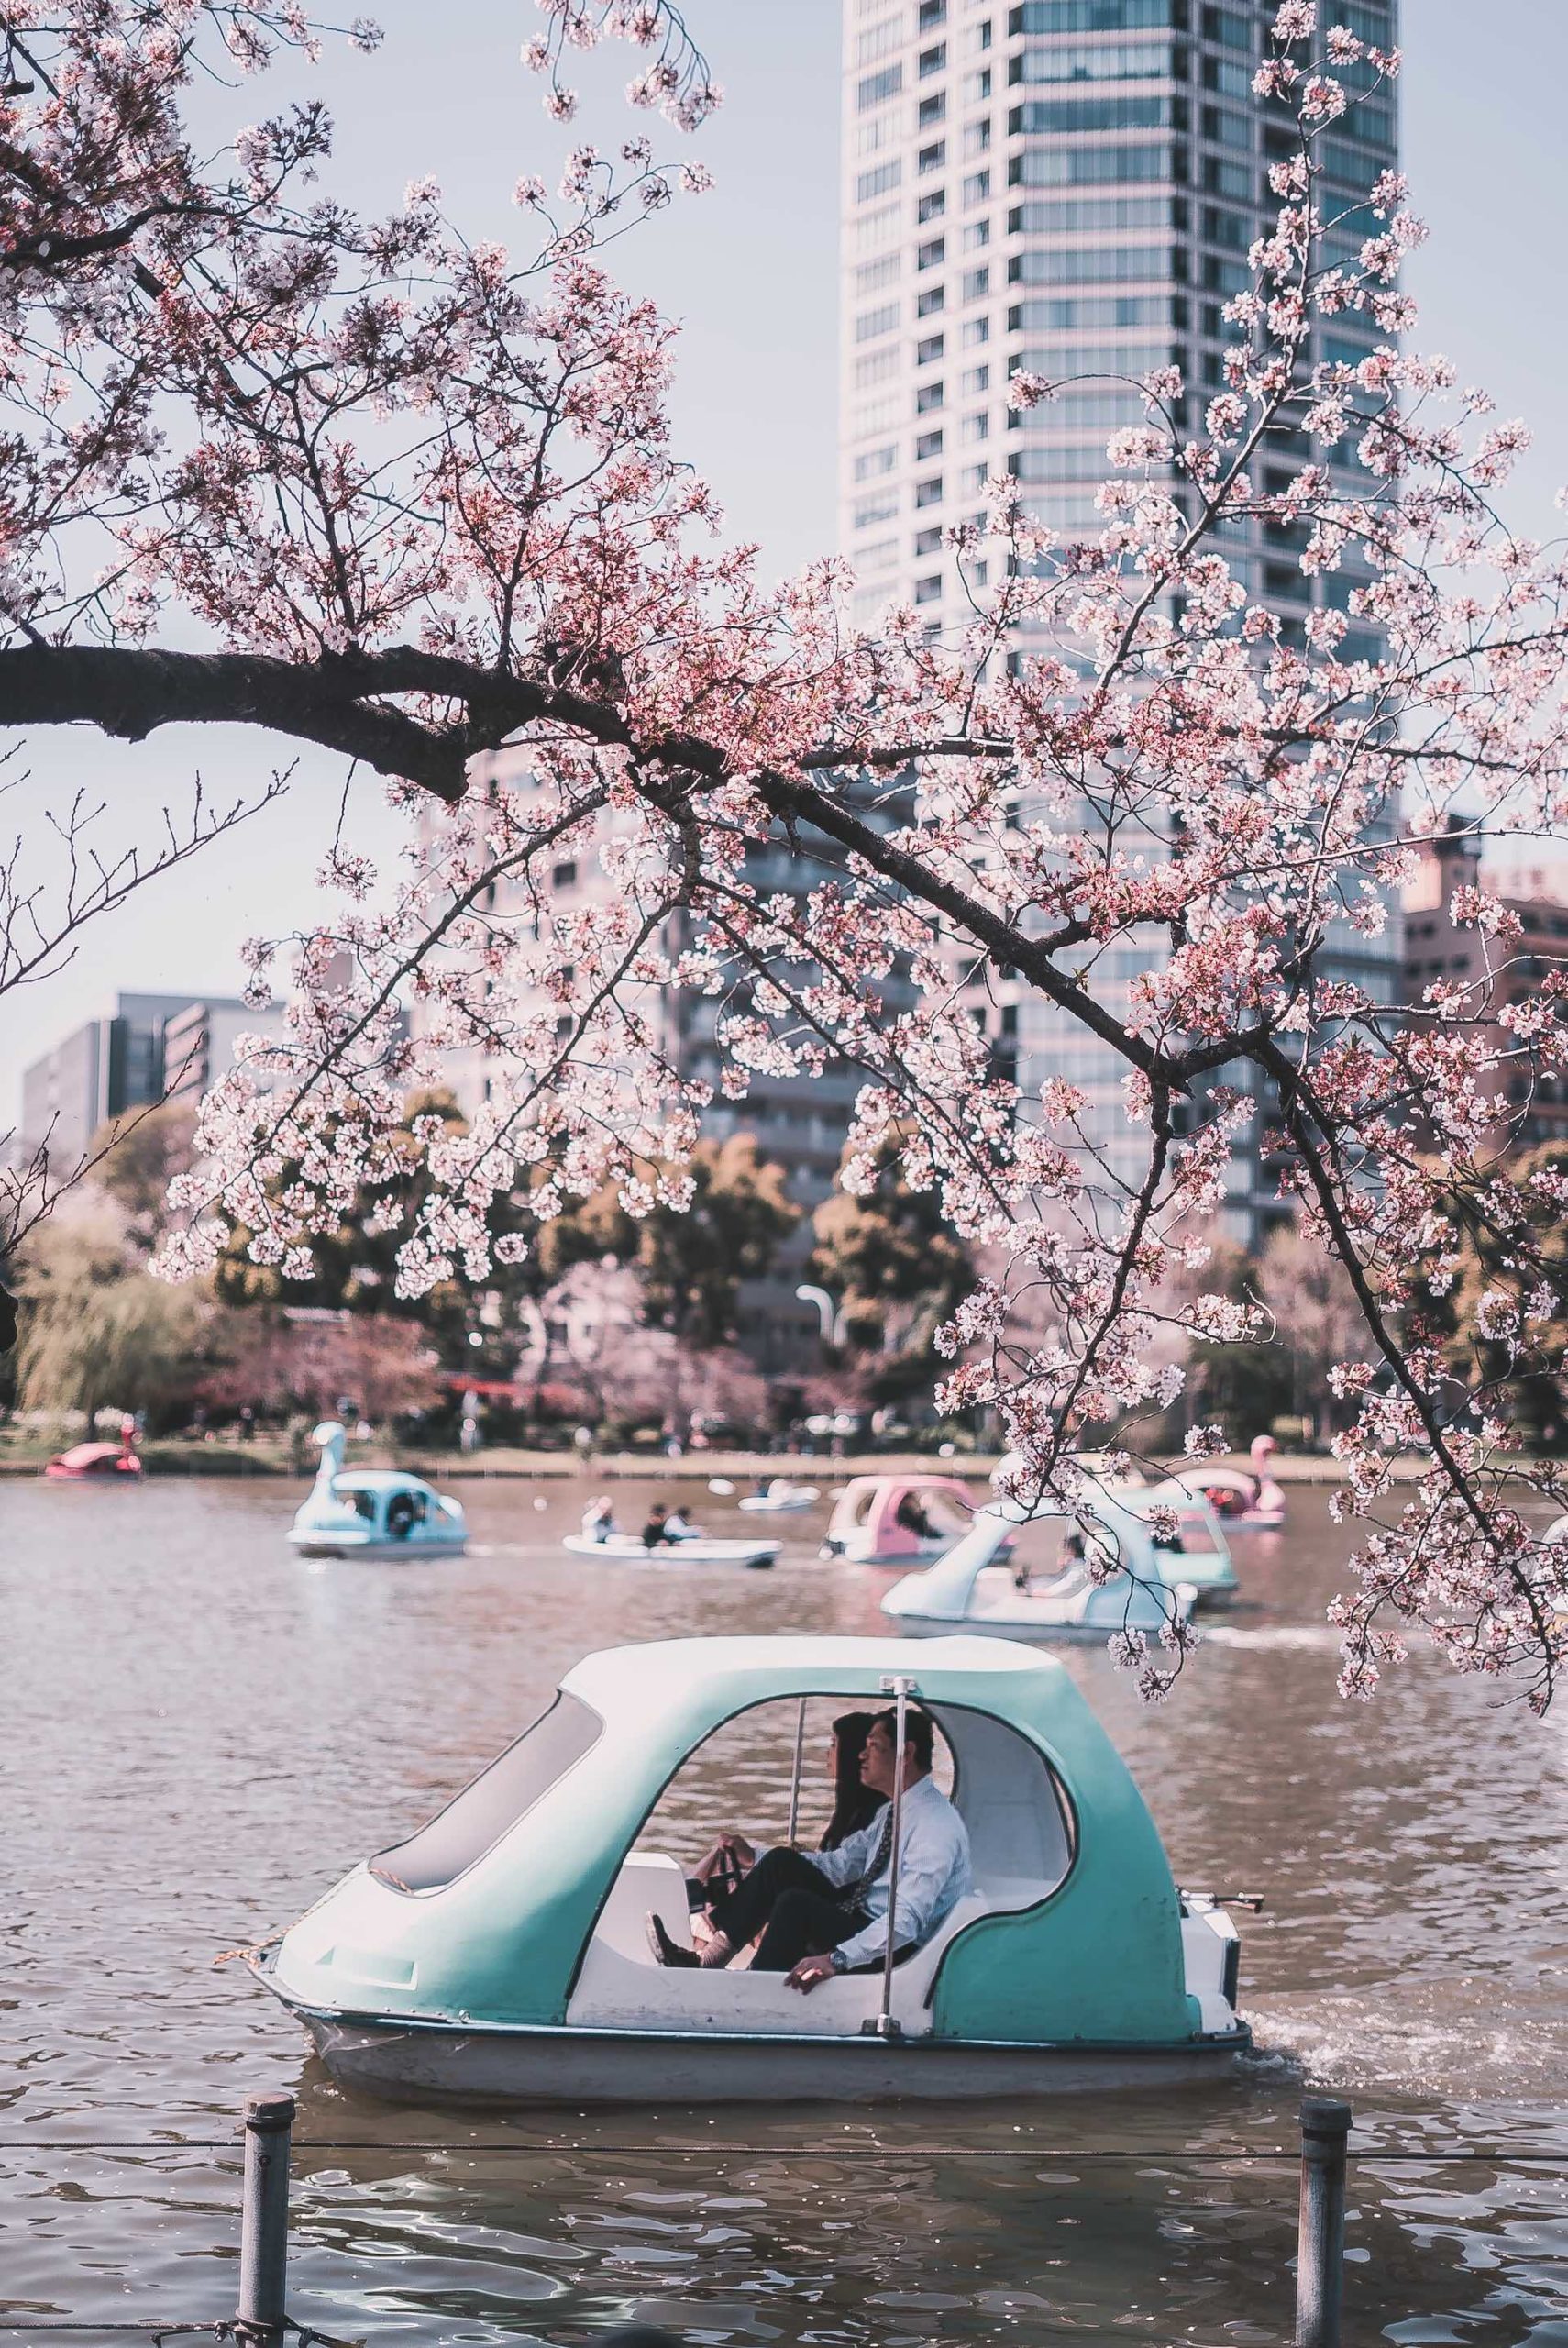 Ueno Park Cherry Blossom